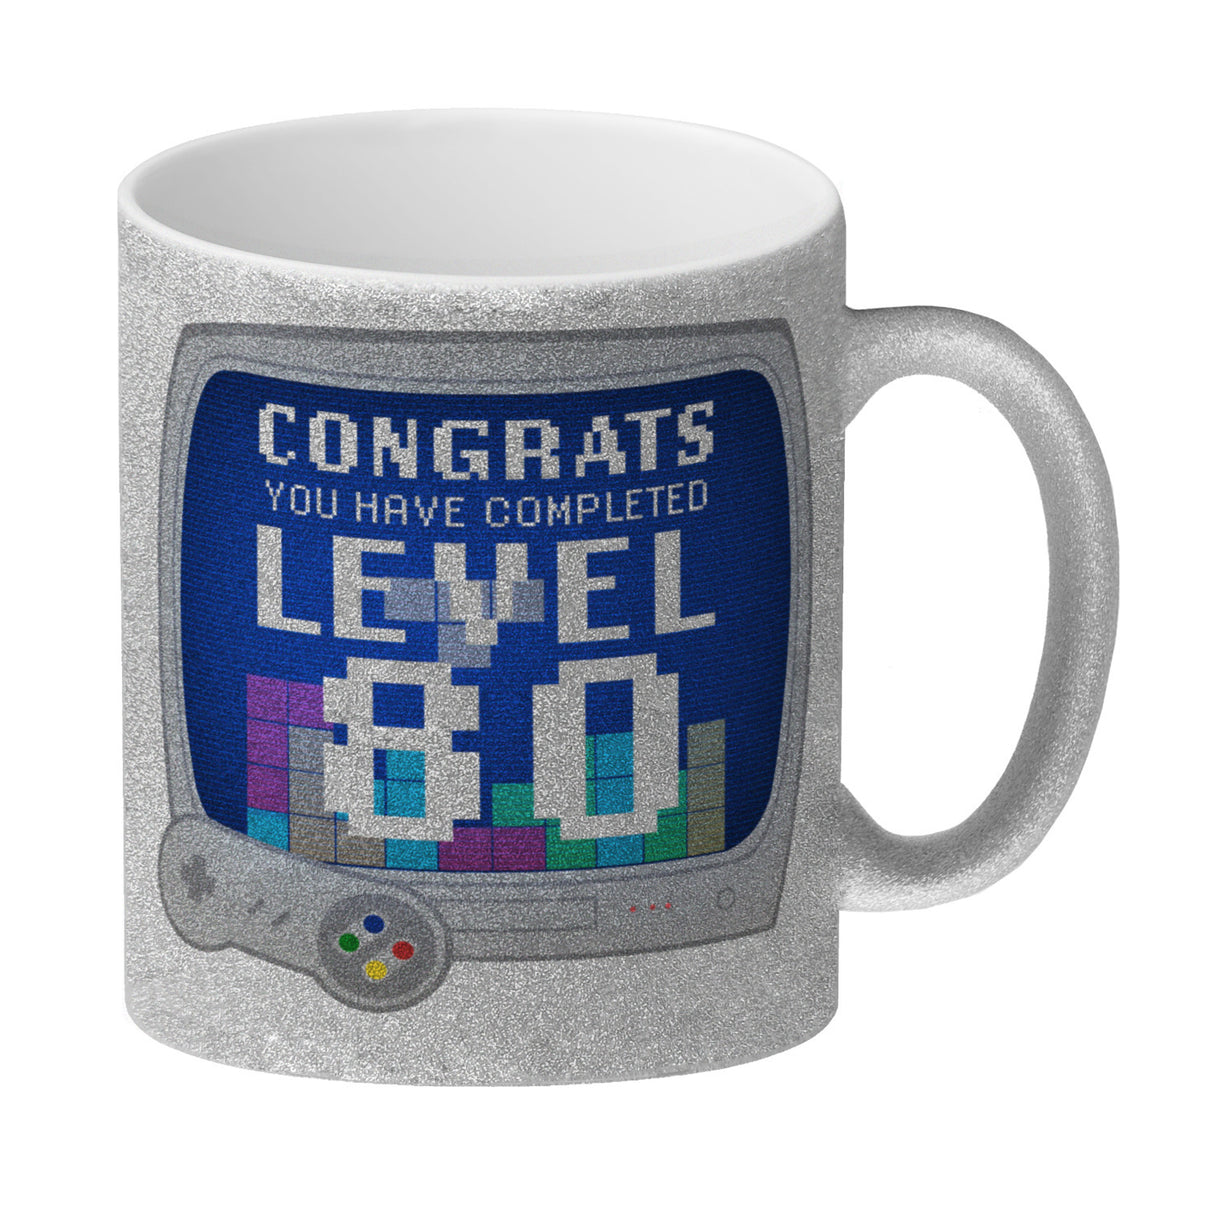 Witziger Kaffeebecher für den 80. Geburtstag mit Motiv: Gamer